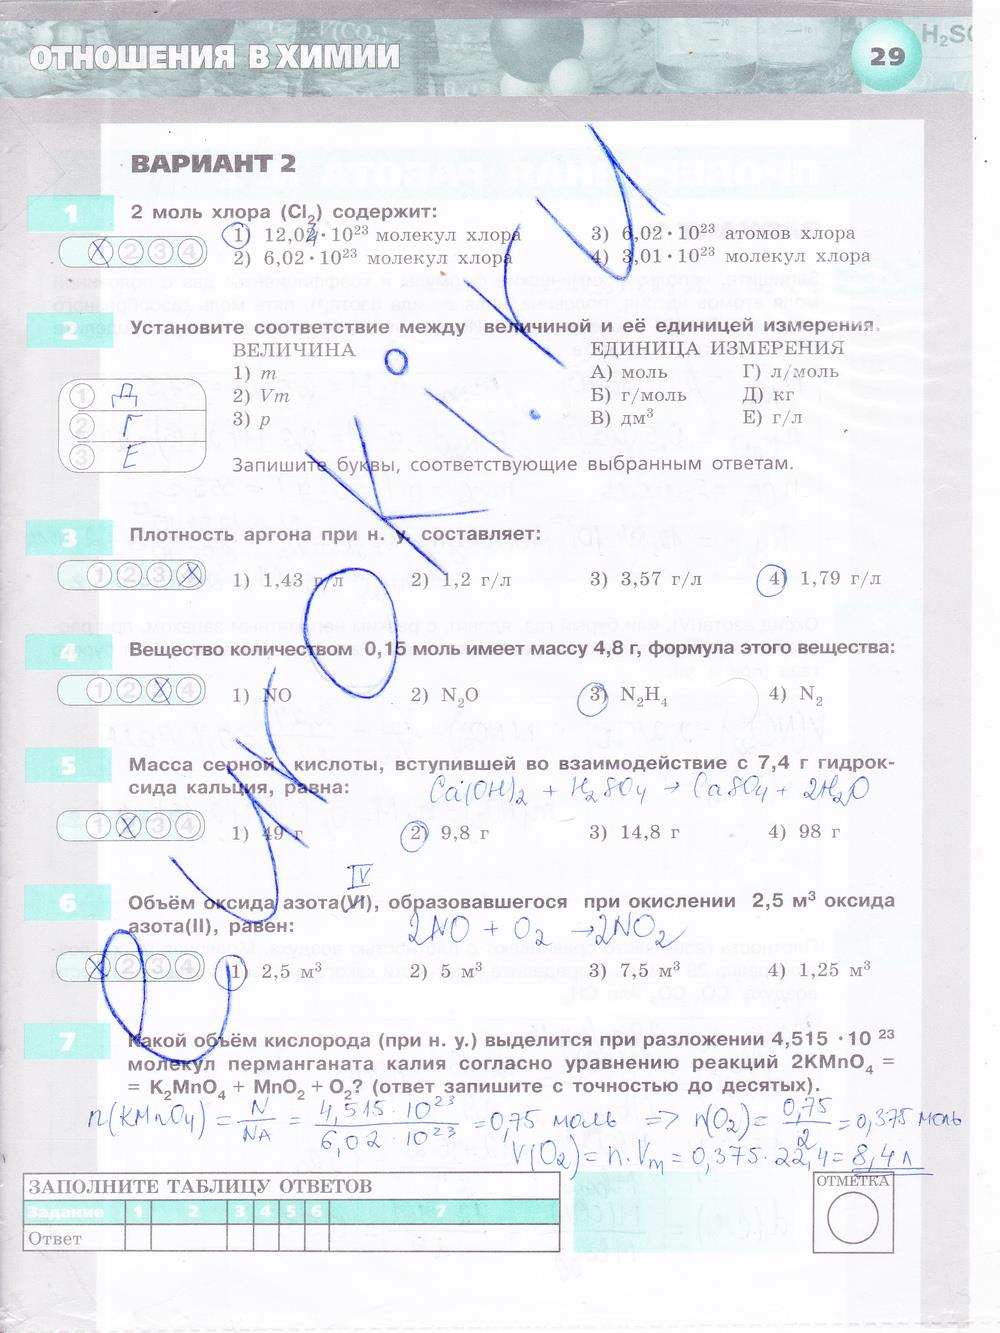 гдз 8 класс тетрадь-экзаменатор страница 29 химия Бобылева, Бирюлина